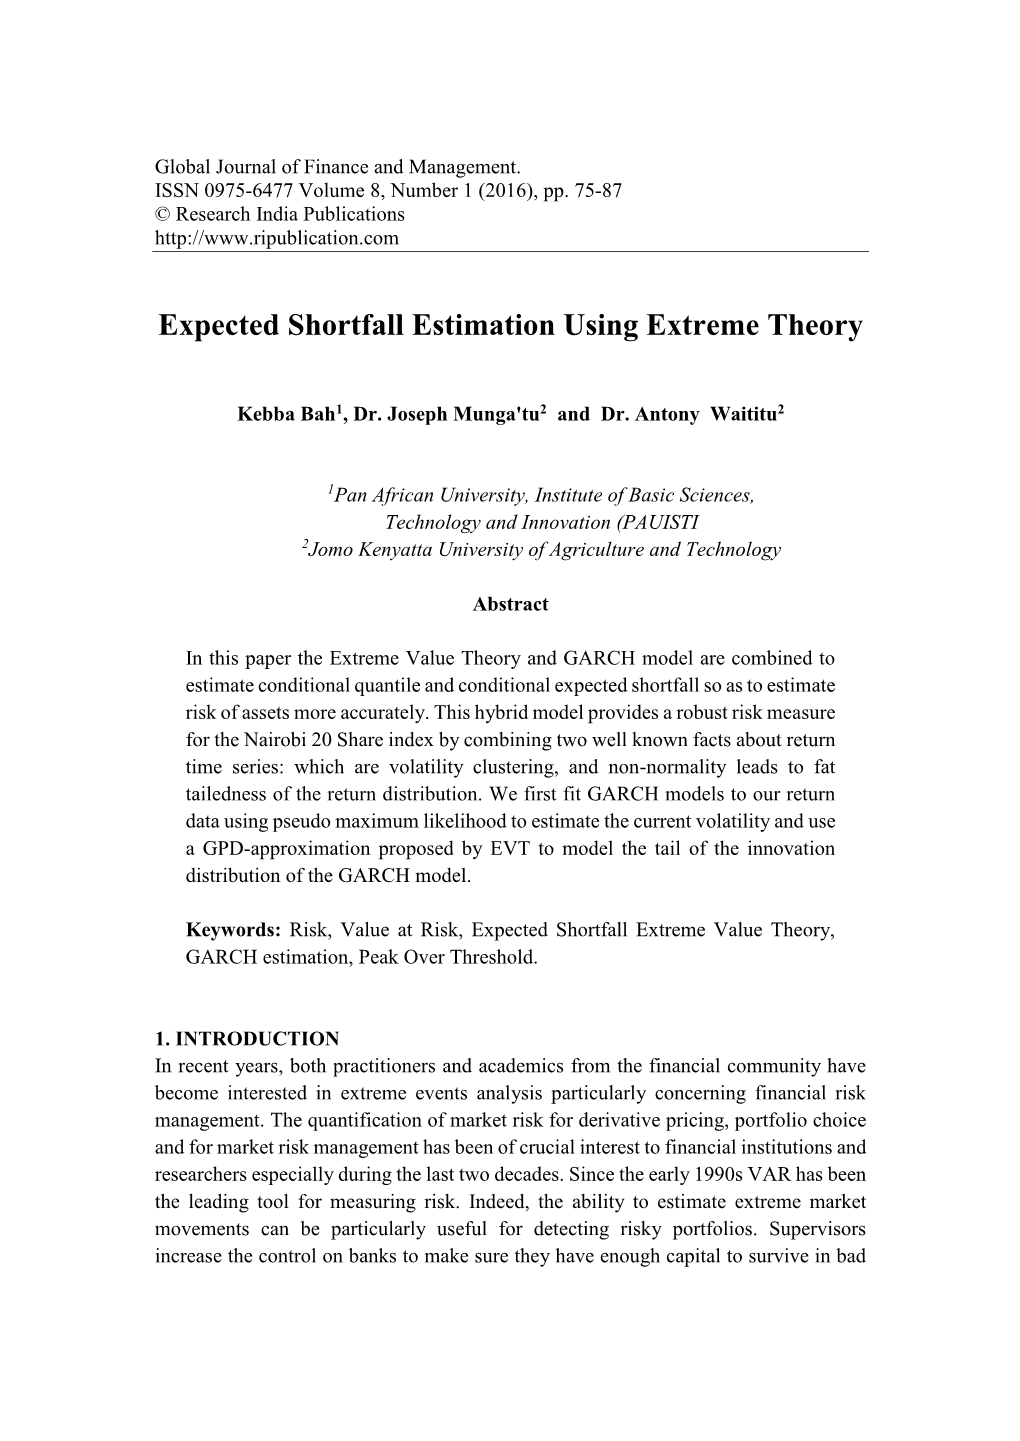 Expected Shortfall Estimation Using Extreme Theory